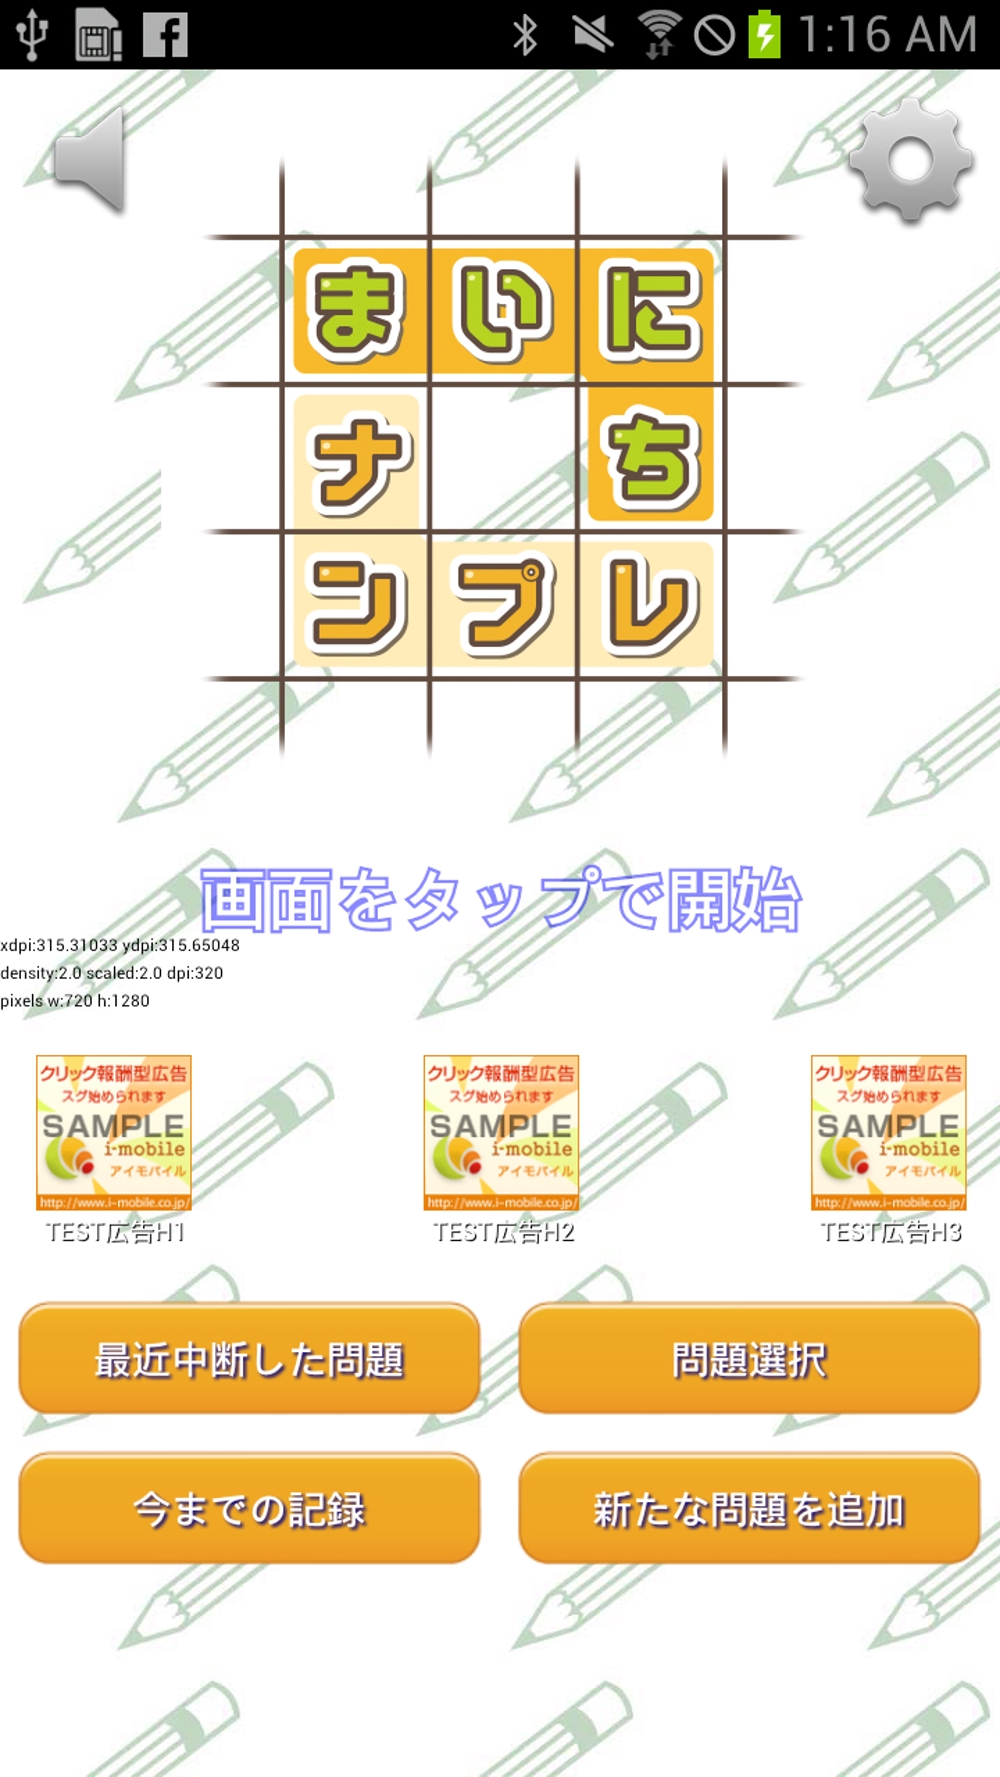 mainichi_logo1image.jpg